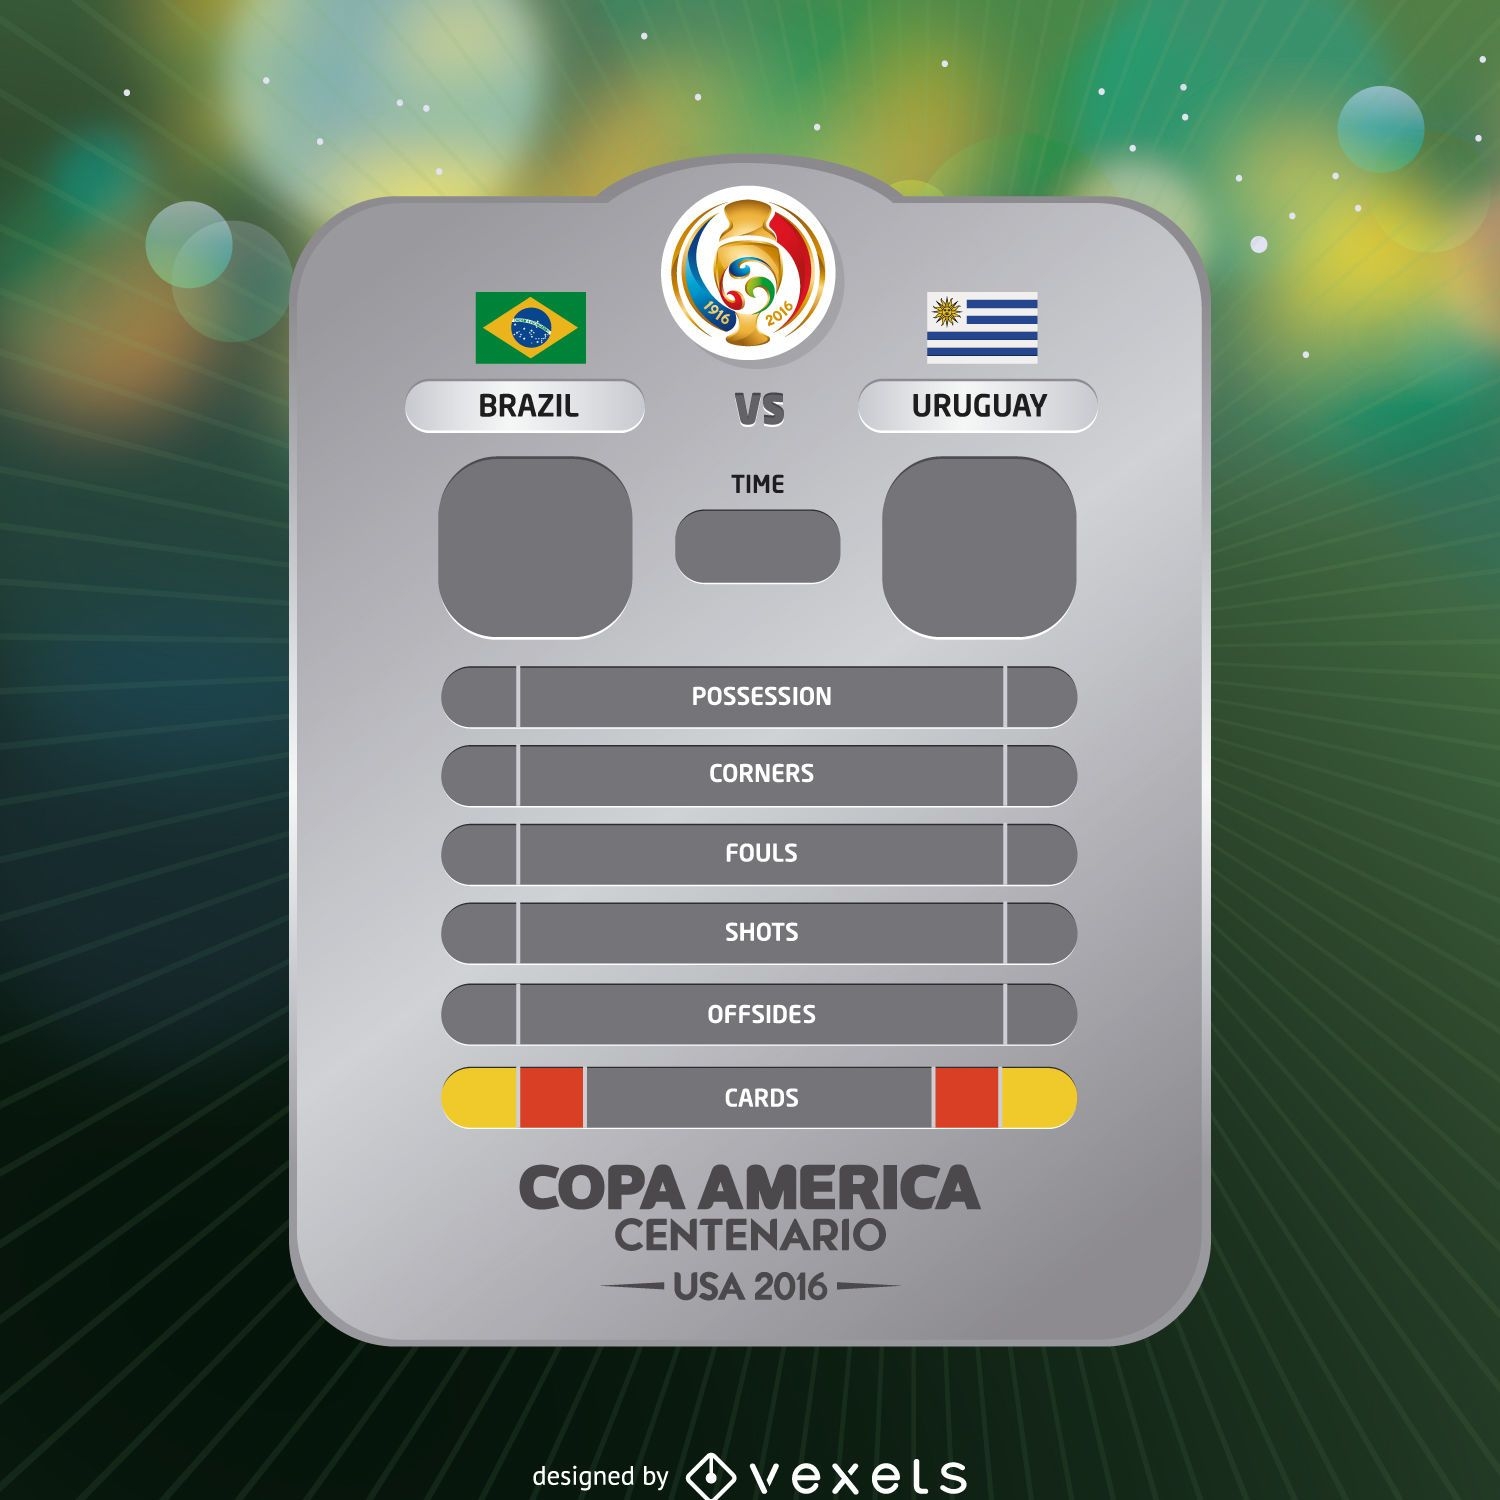 Resultado do jogo da Copa América